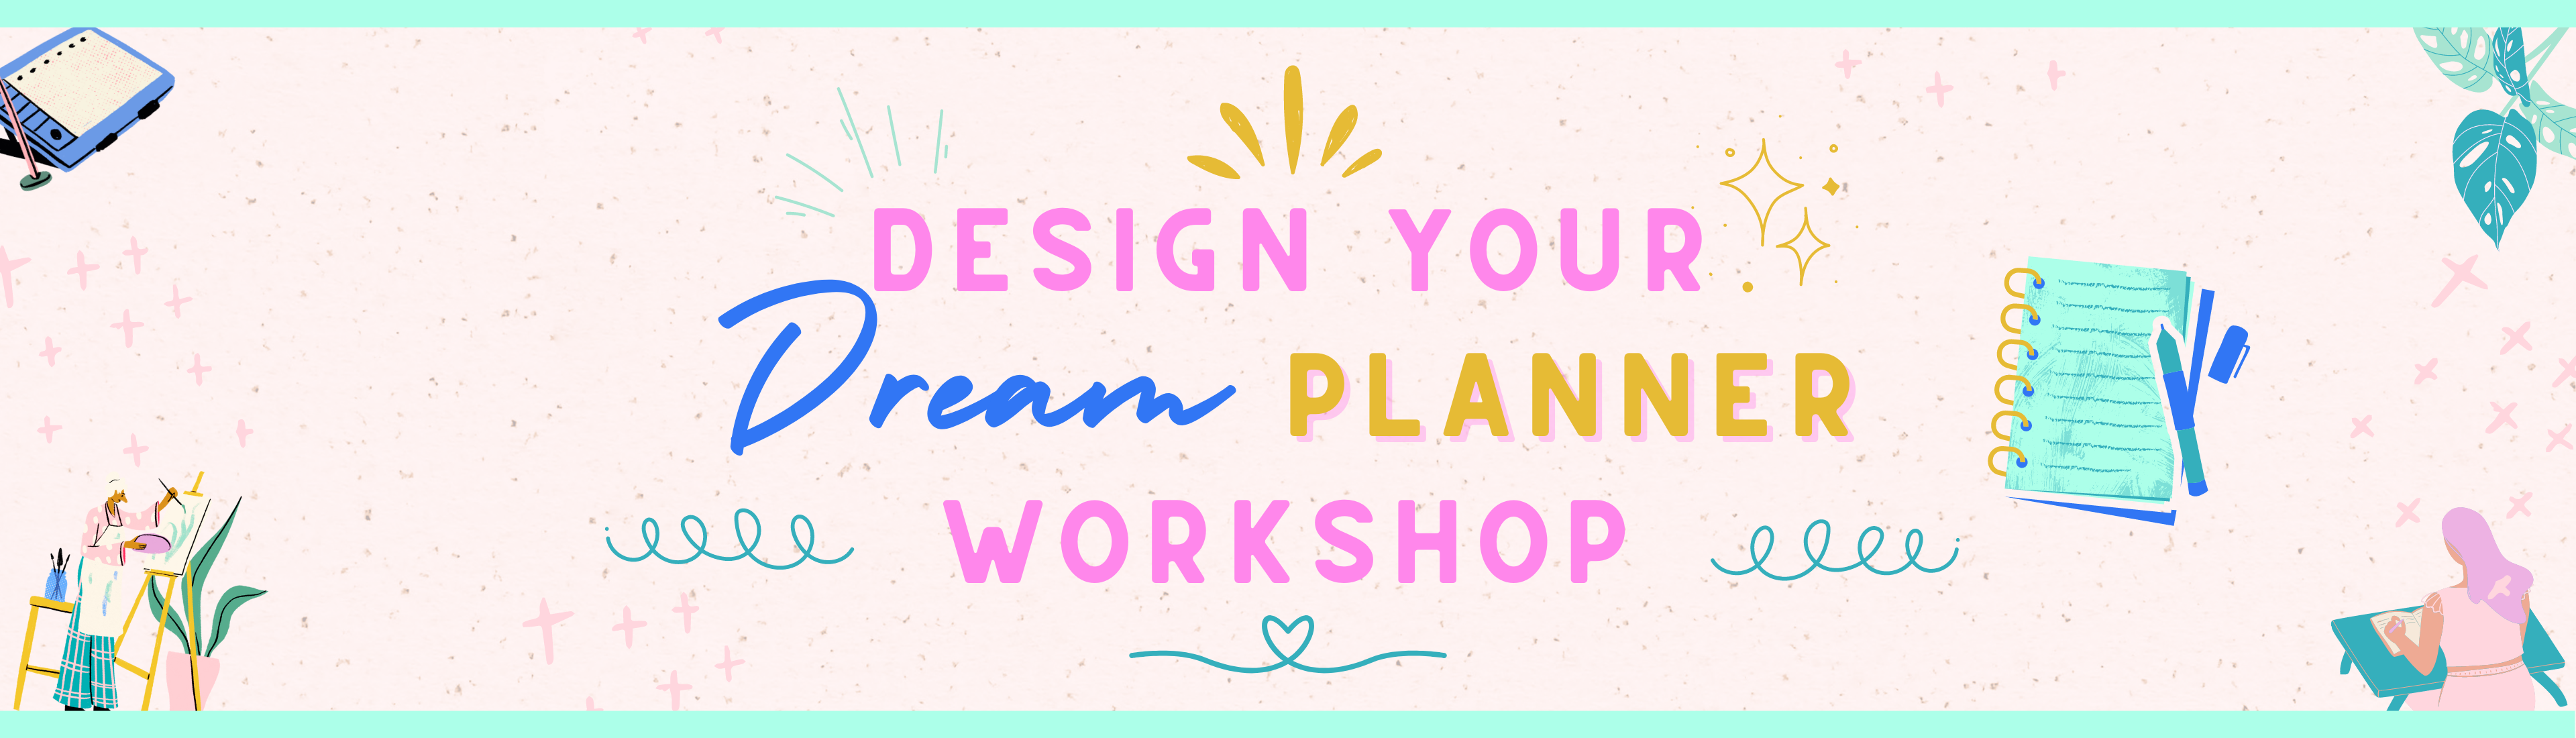 creative spark summit speaker Chisomo Design your dream planner workshop